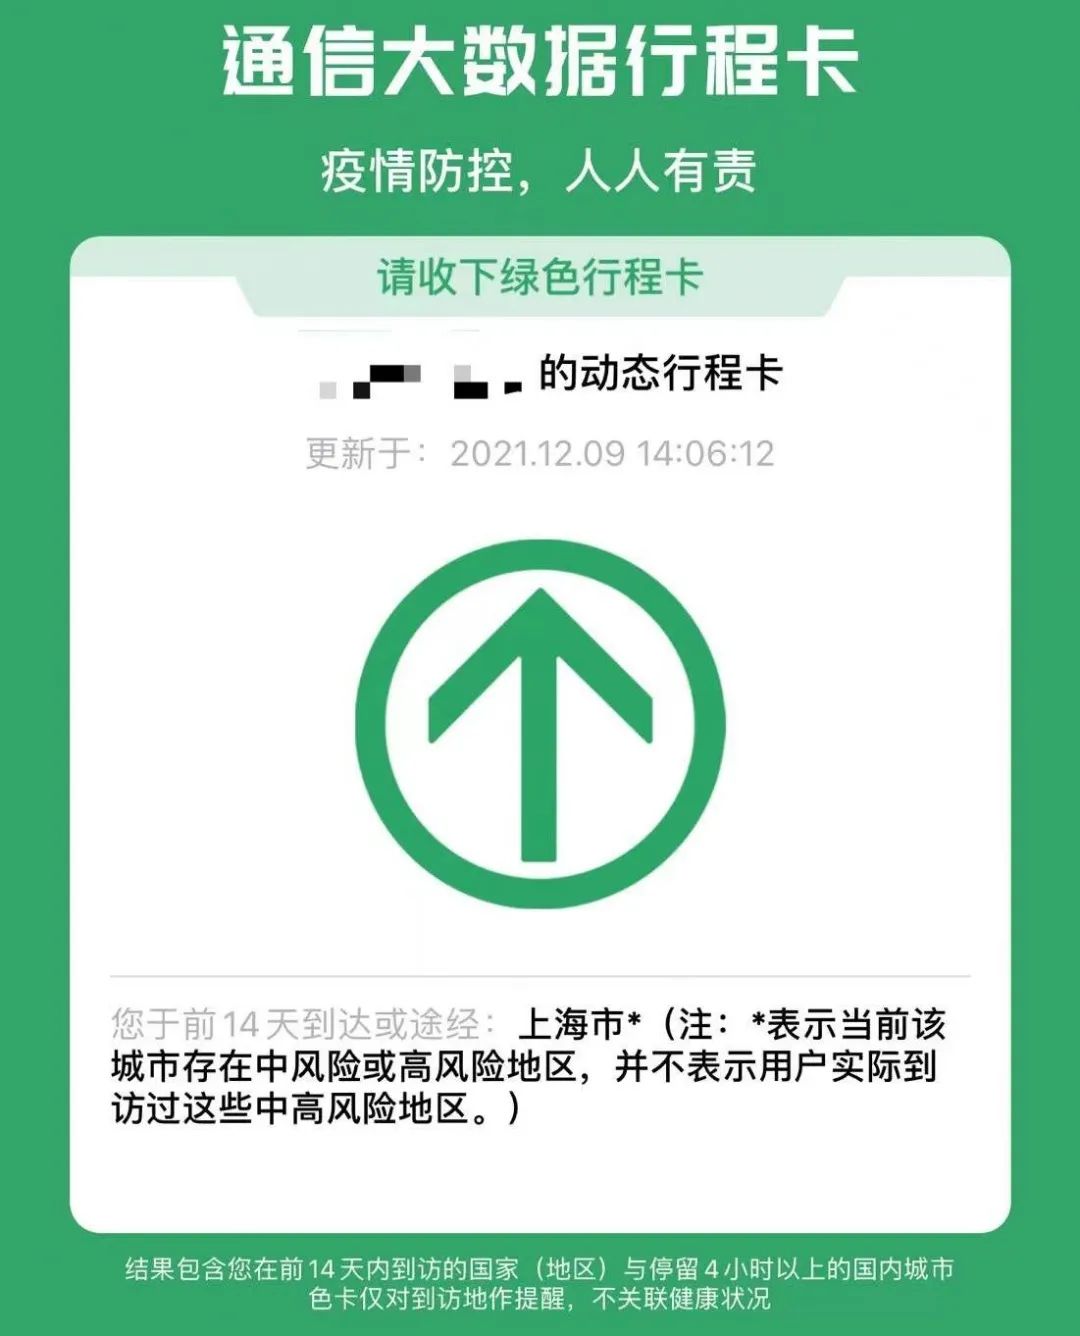 北京行程码星号图片